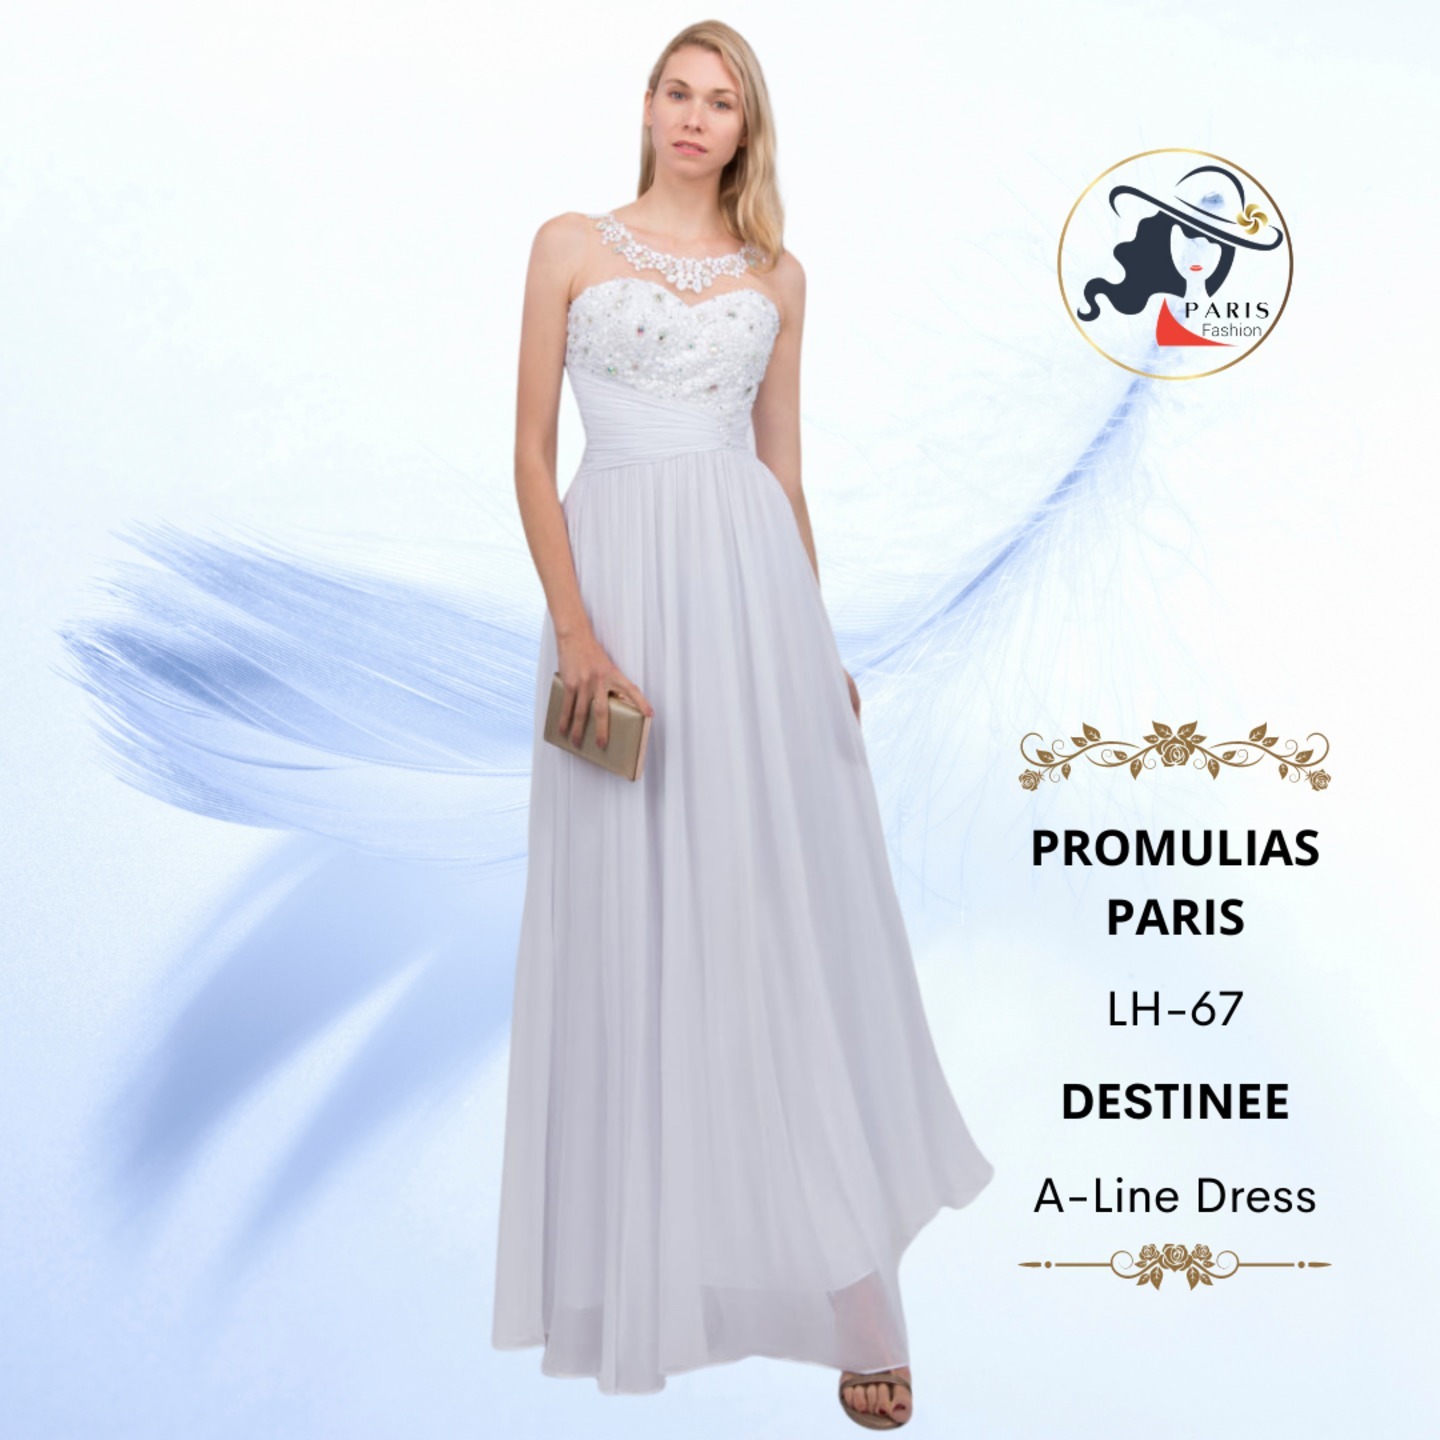 PROMULIAS PARIS  LH-67  DESTINEE  A-LINE DRESS